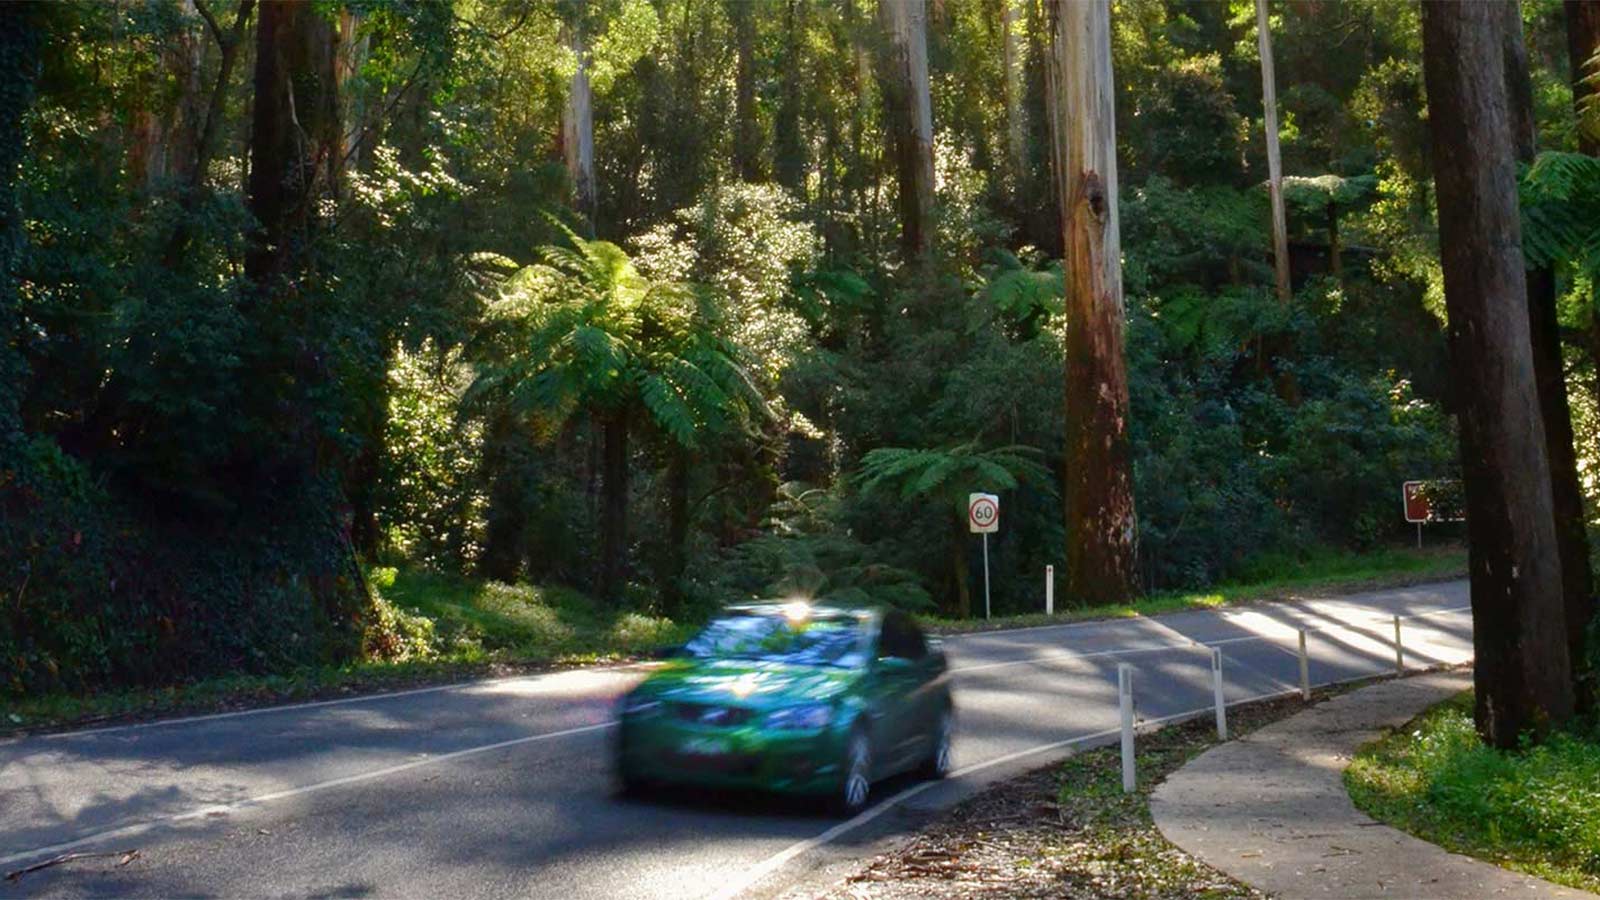 Green car driving on Mt Dandenong road, Victoria.